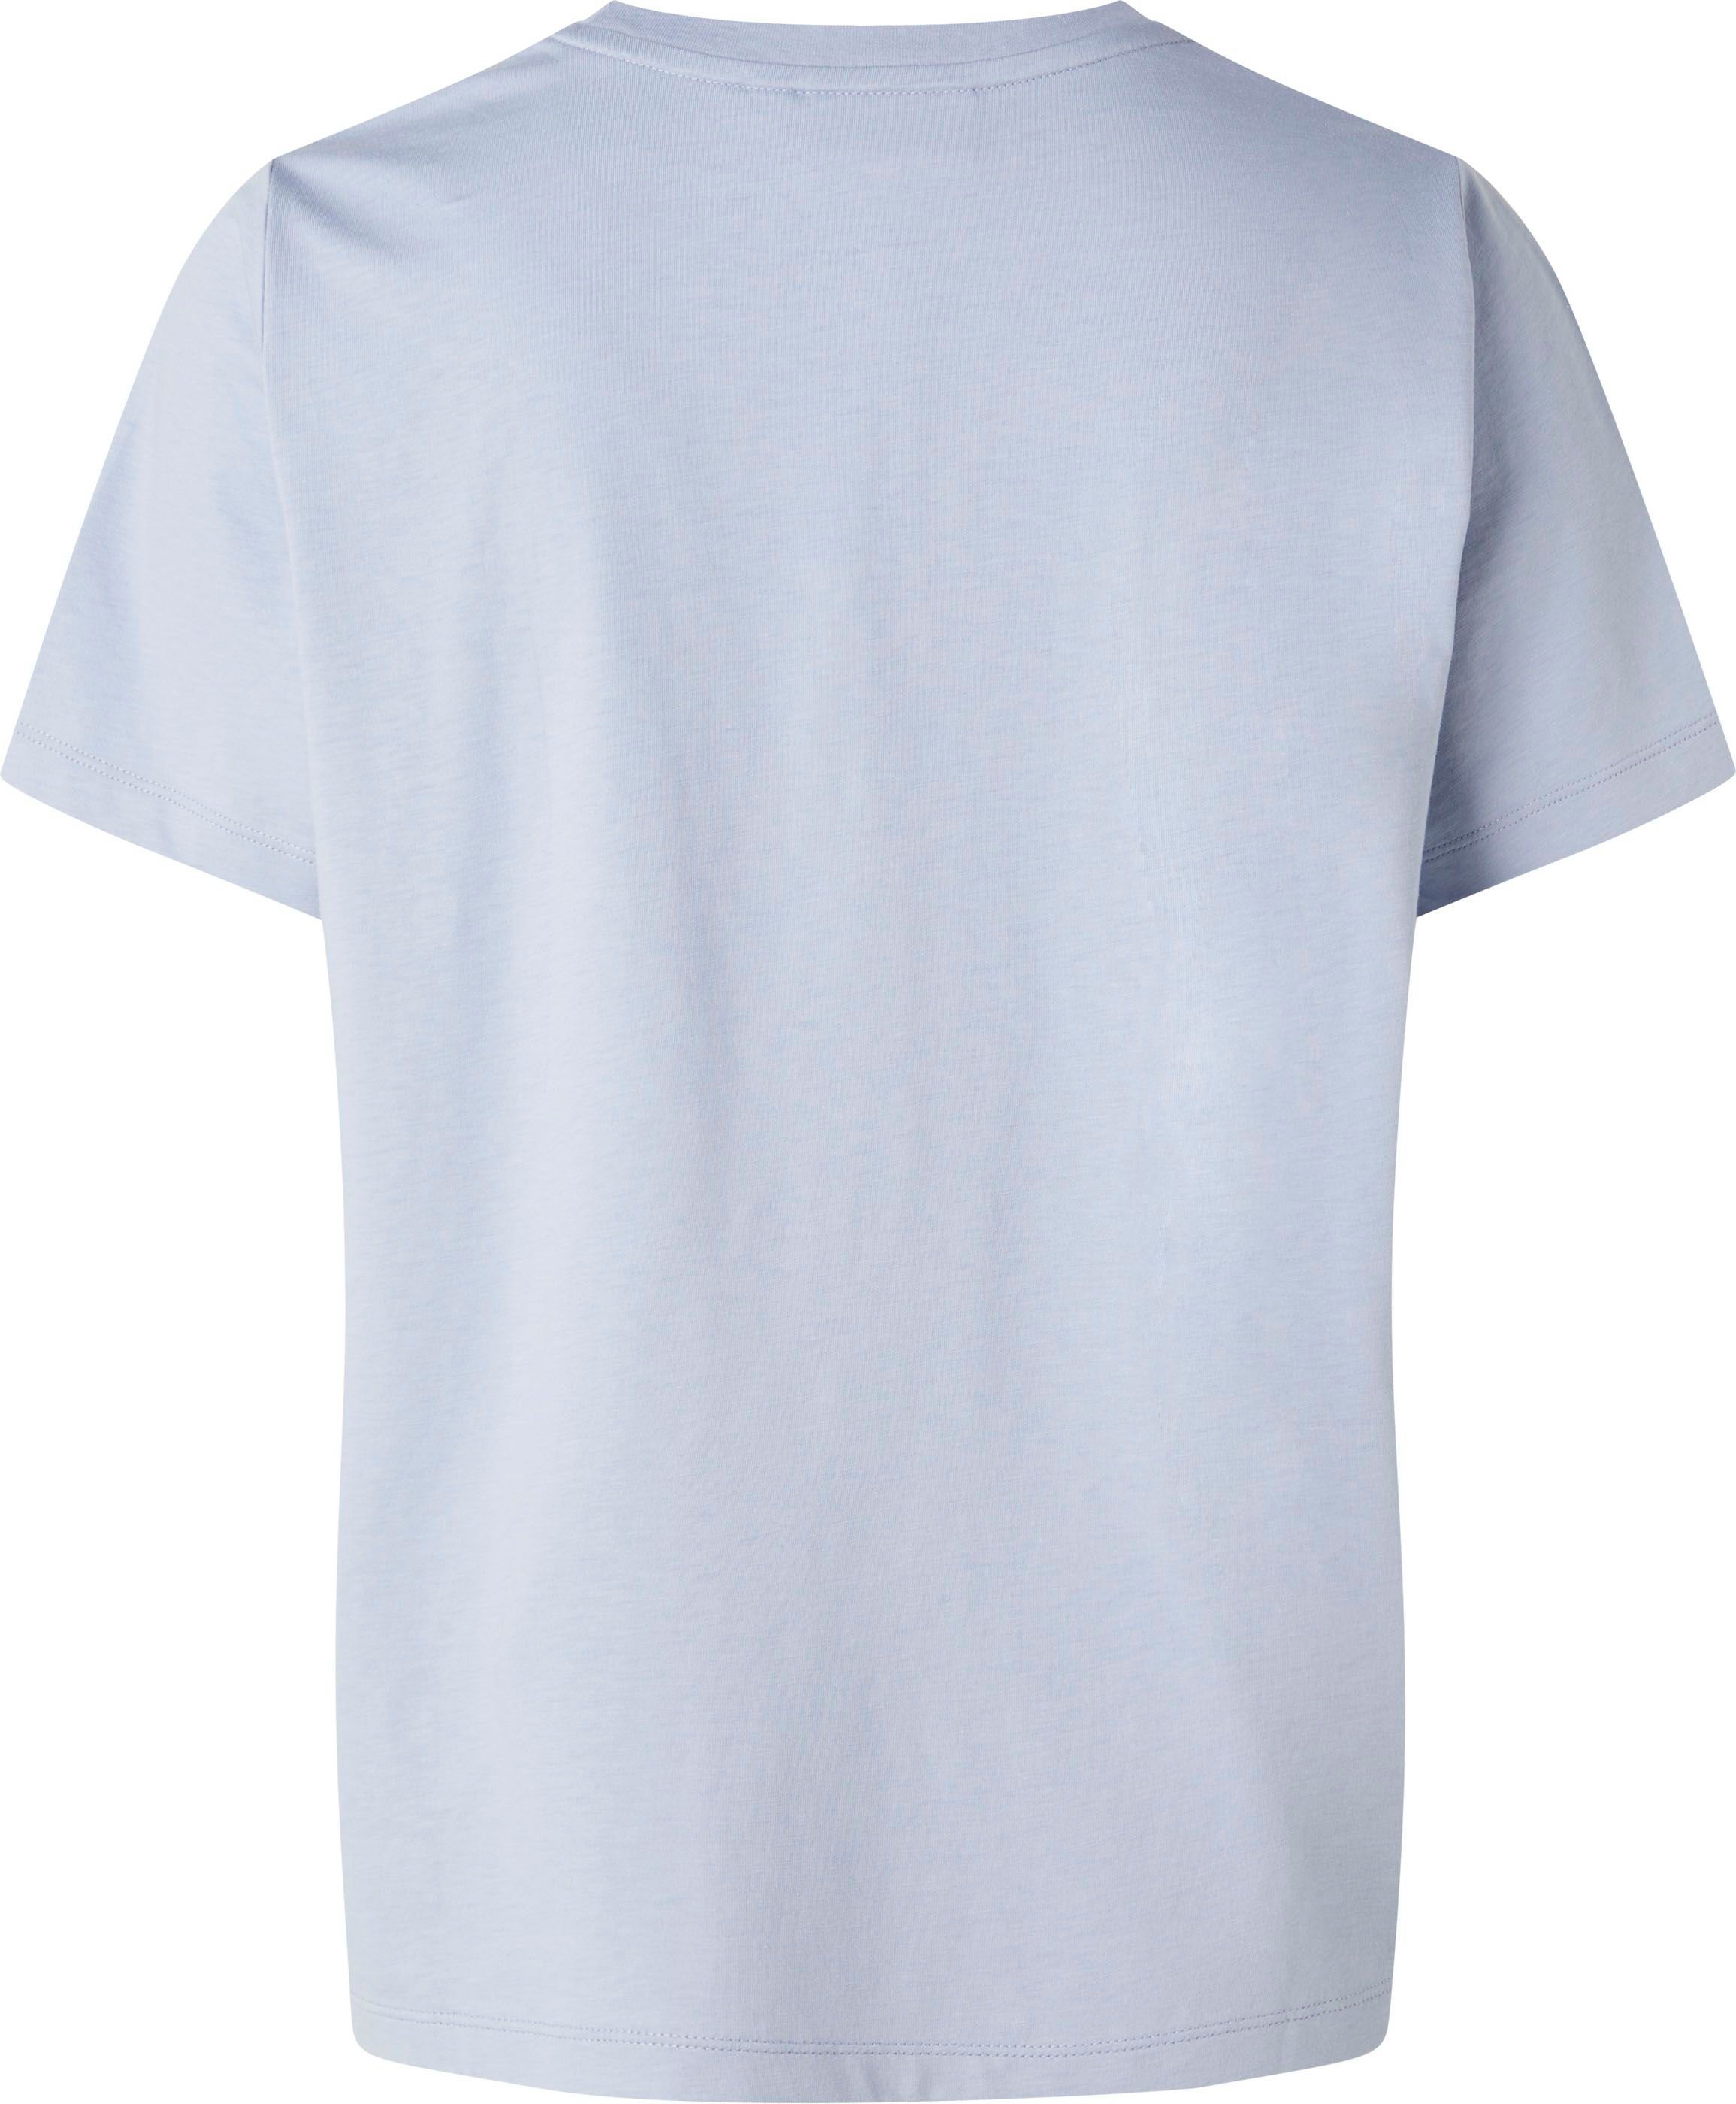 T-Shirt Baumwolle MICRO aus T-SHIRT Calvin reiner Klein hellblau LOGO